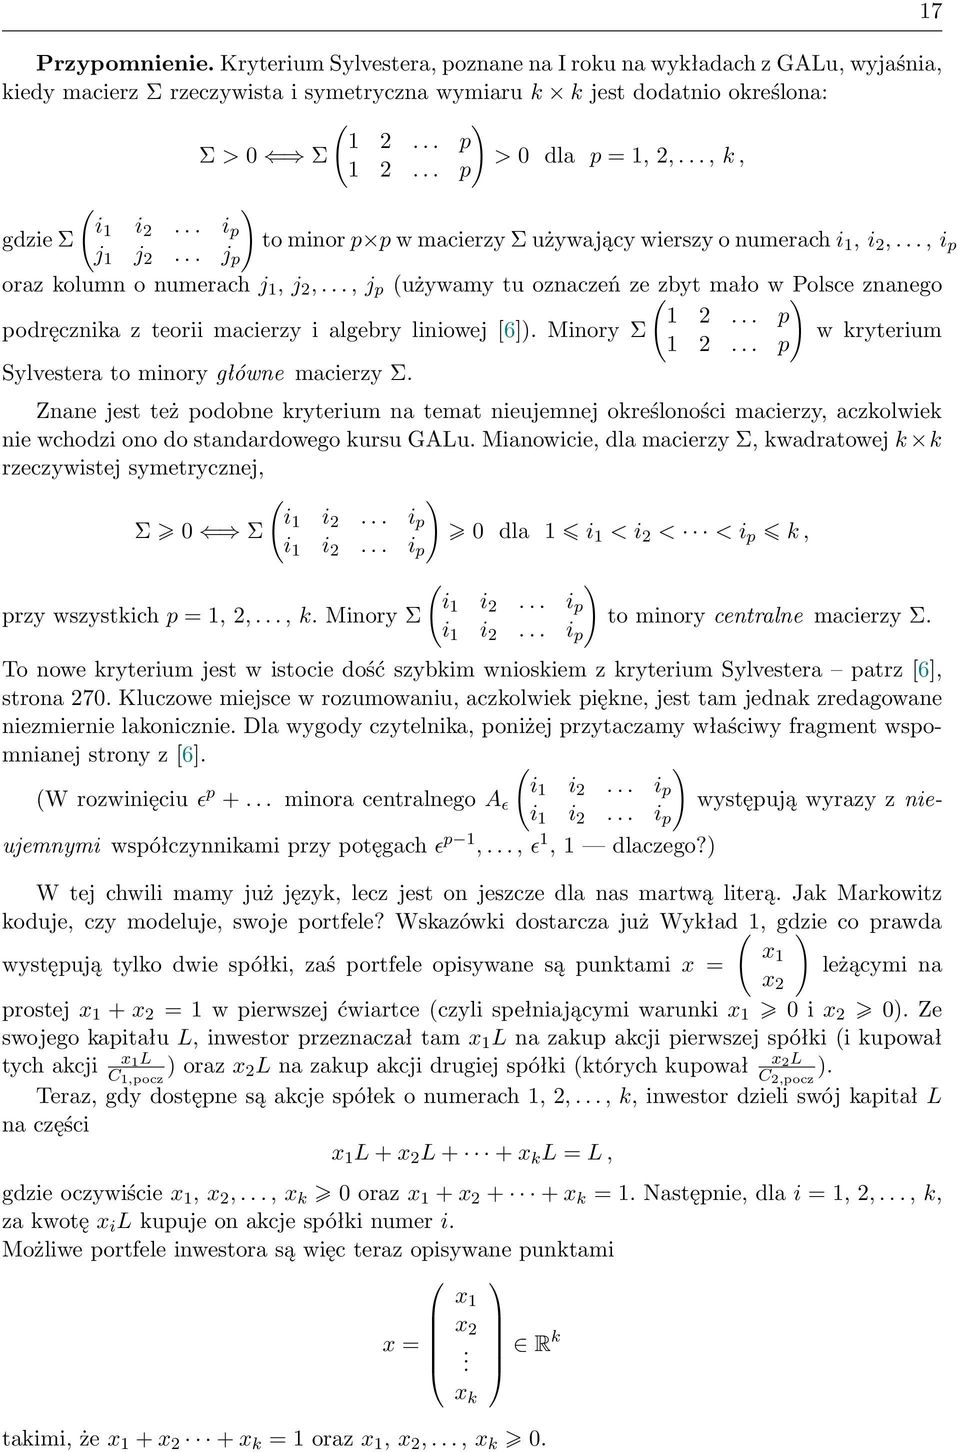 .., j p (używamy tu oznaczeń ze ( zbyt mało w ) Polsce znanego 1... p podręcznika z teorii macierzy i algebry liniowej [6]). Minory Σ w kryterium 1... p Sylvestera to minory główne macierzy Σ.